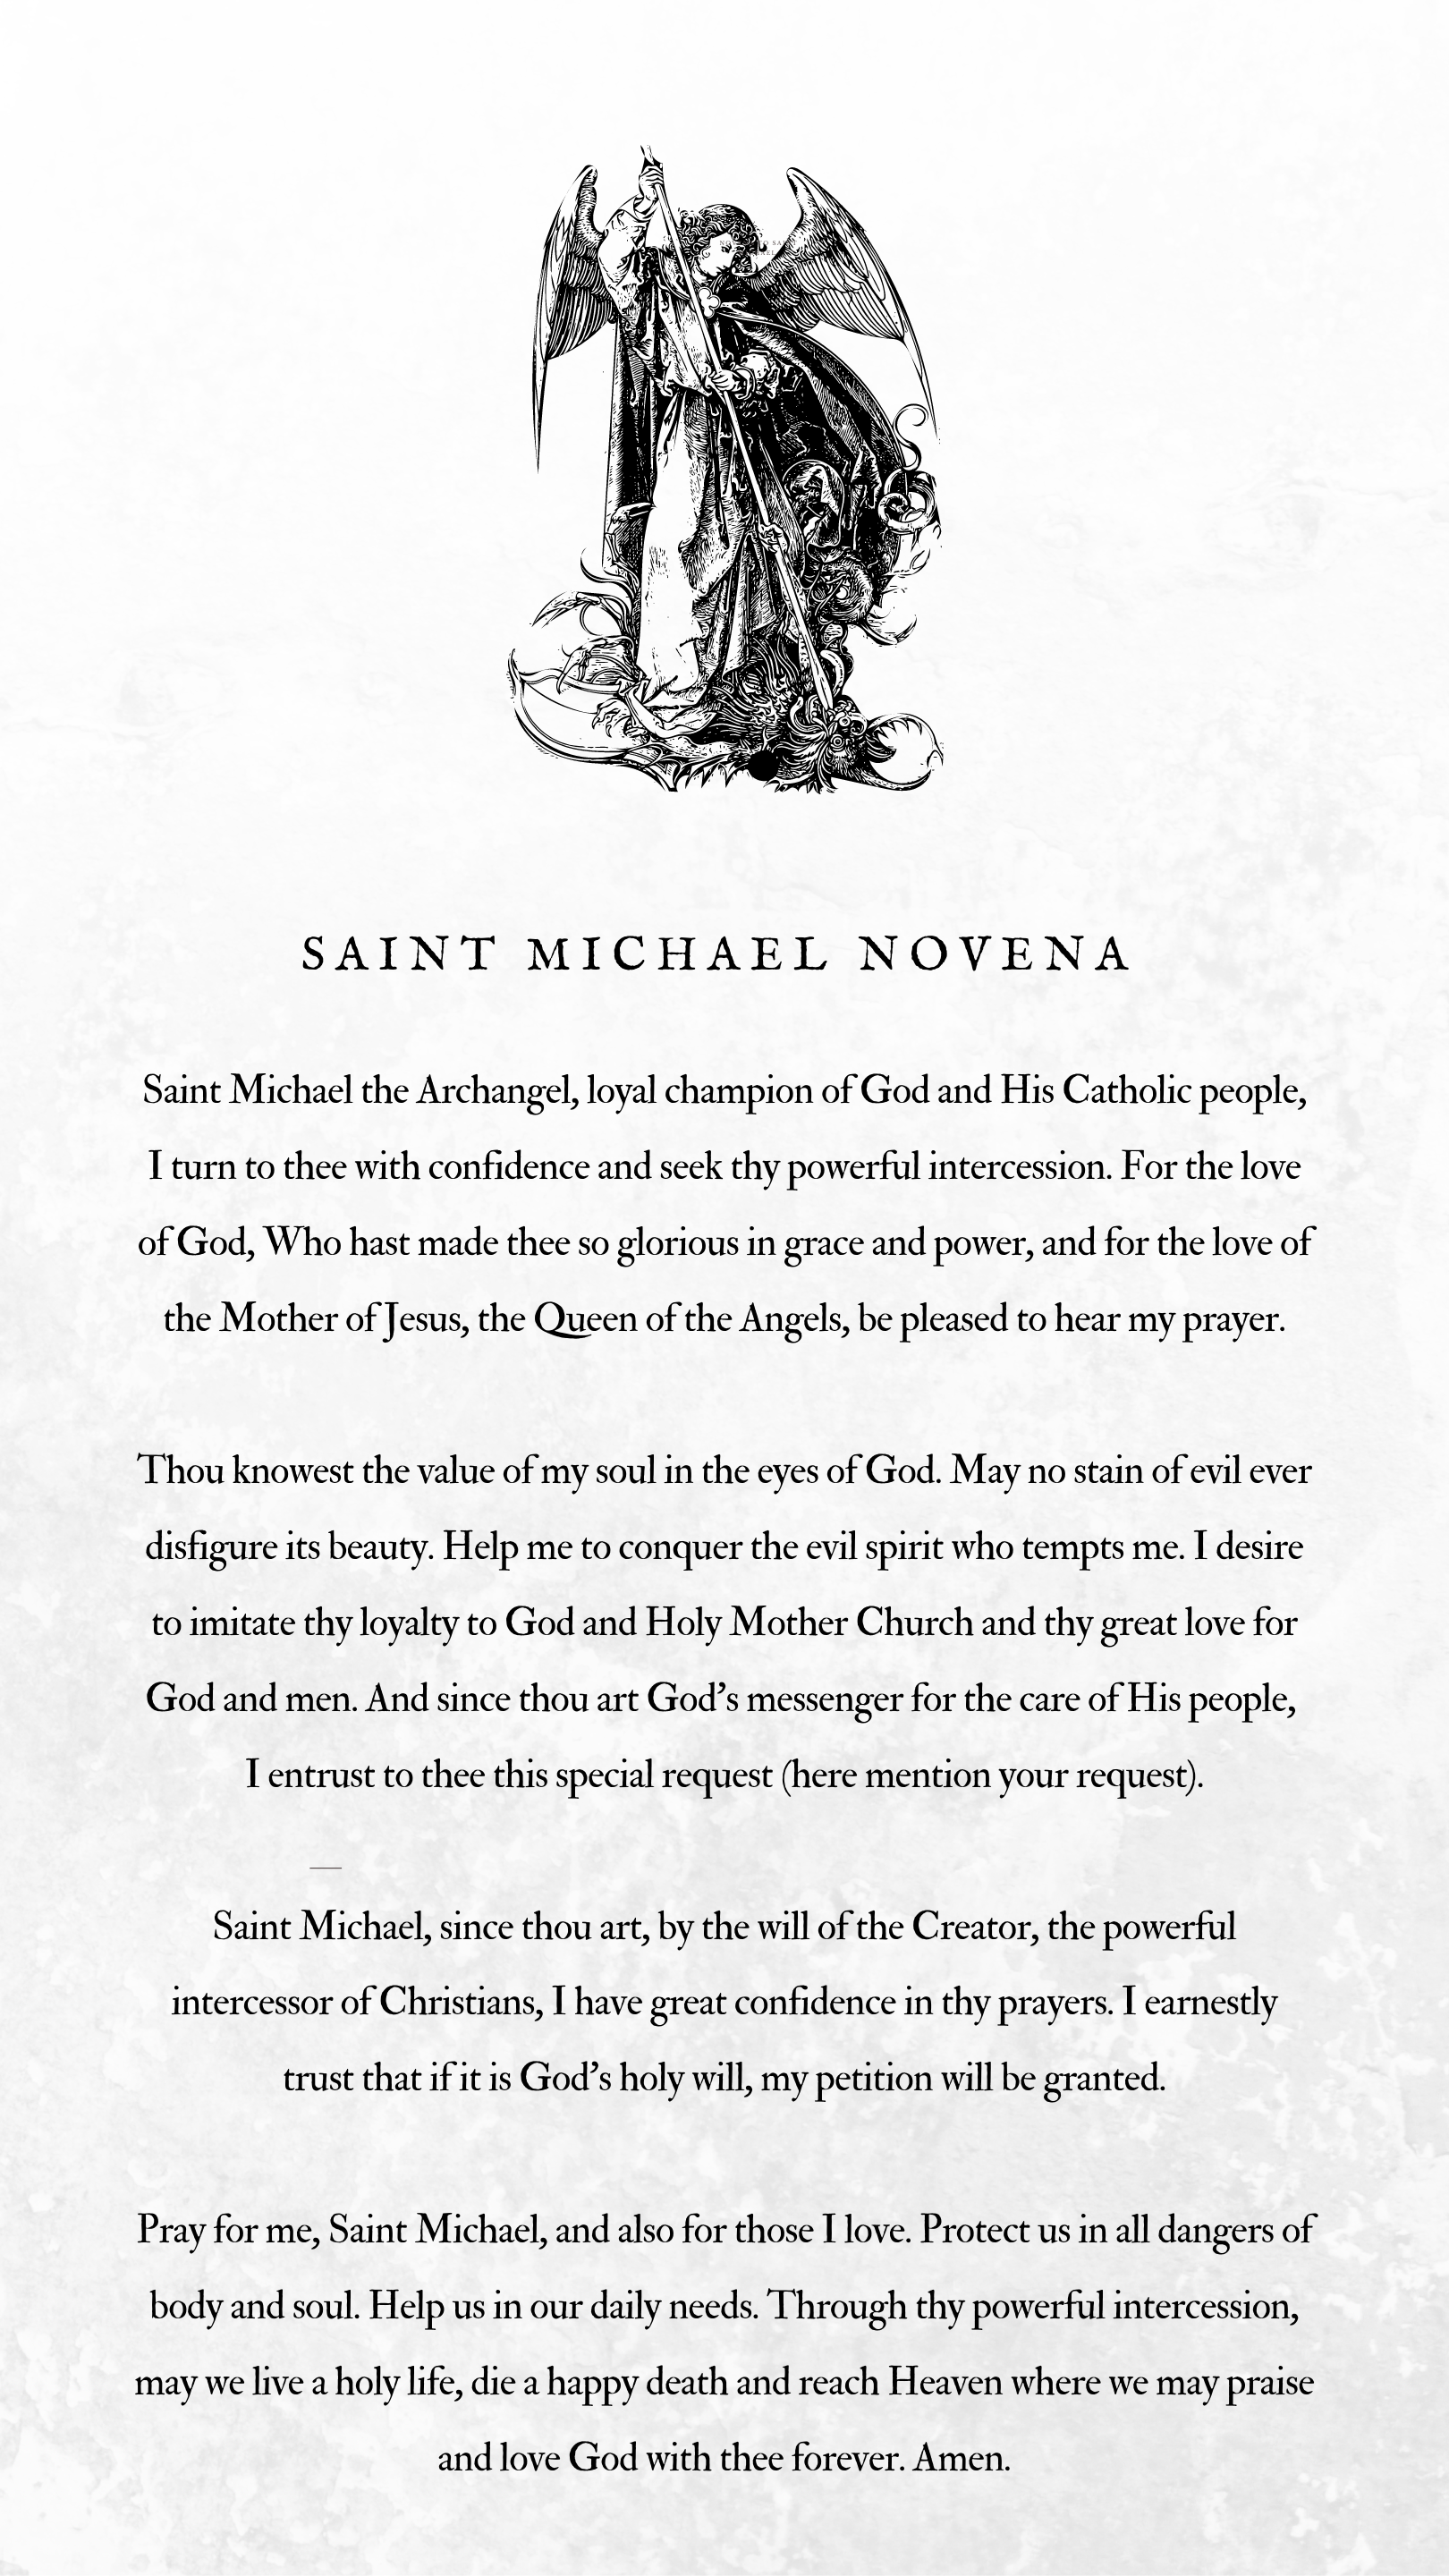 St Michael Novena.png